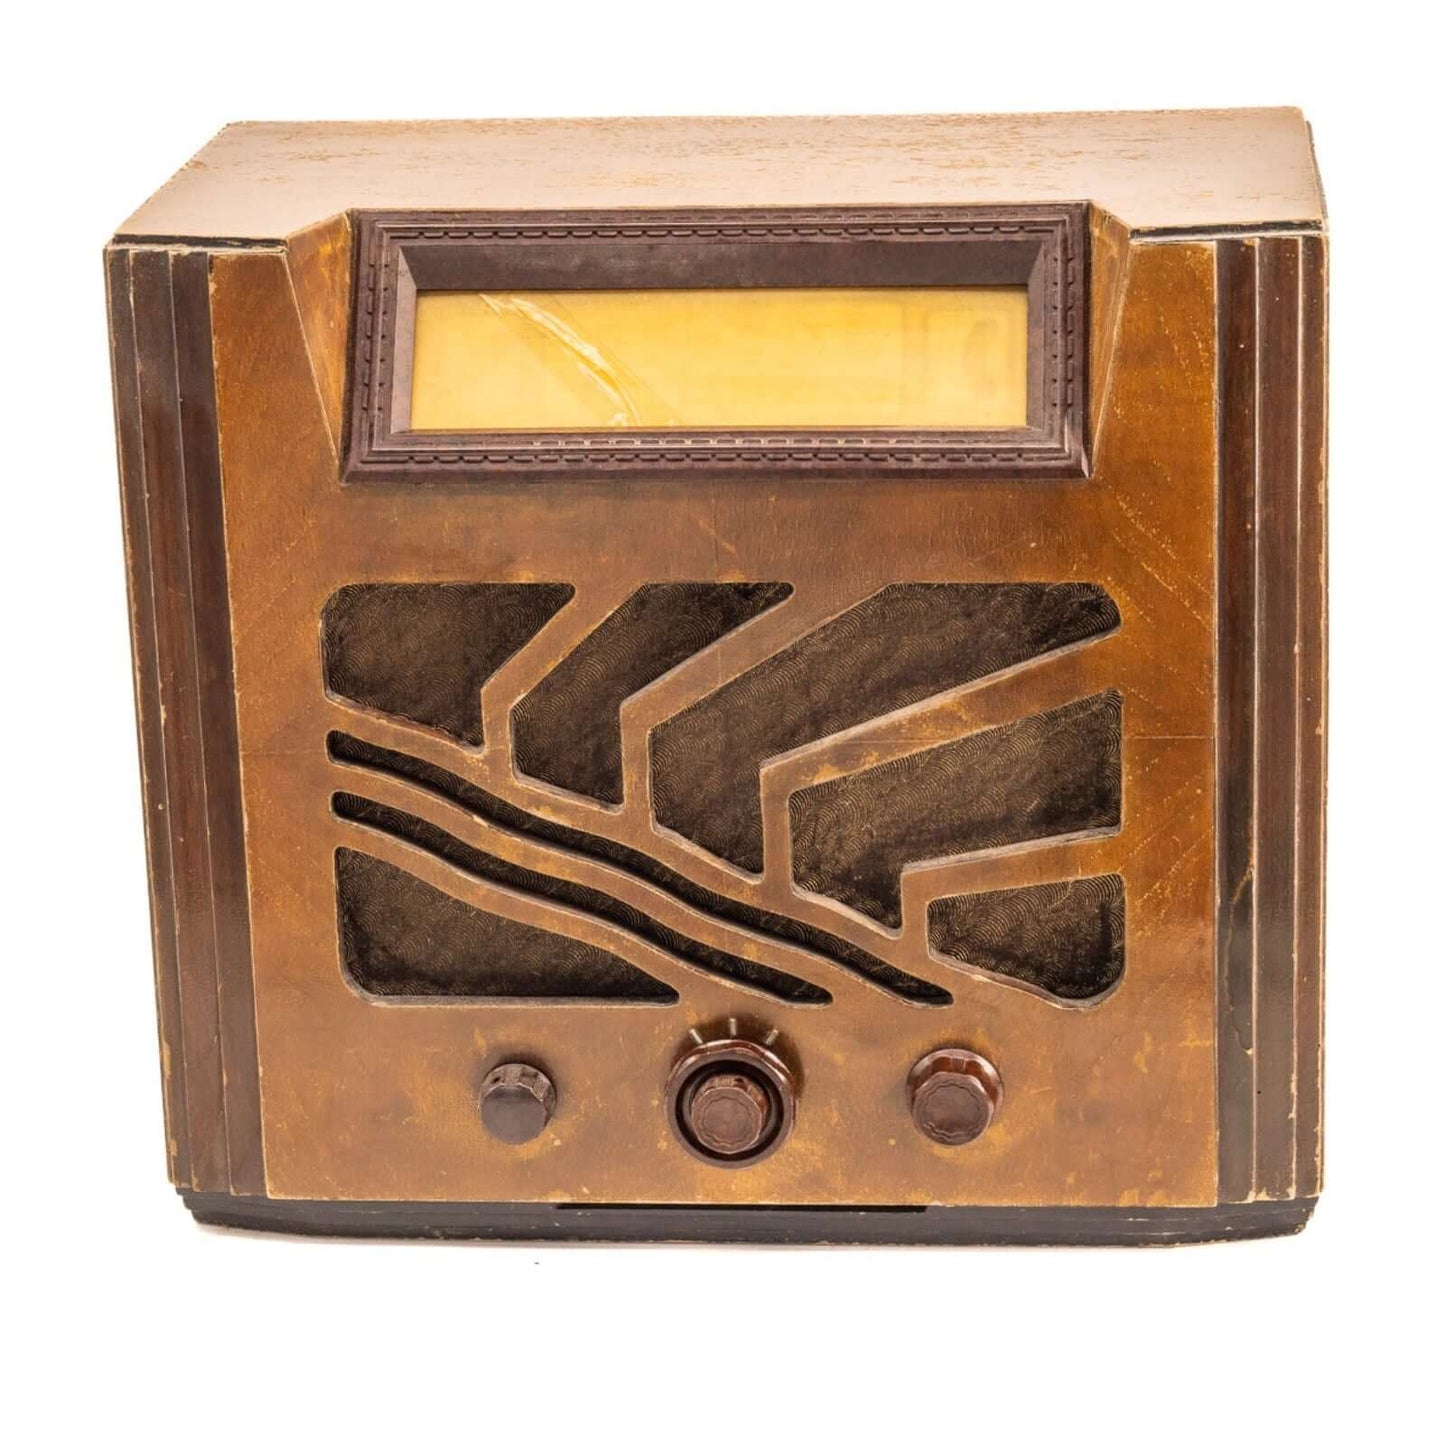 Radio Bluetooth Radiola Vintage 30's - A.bsolument - absolument -radio - vintage - prodige - bluetooth